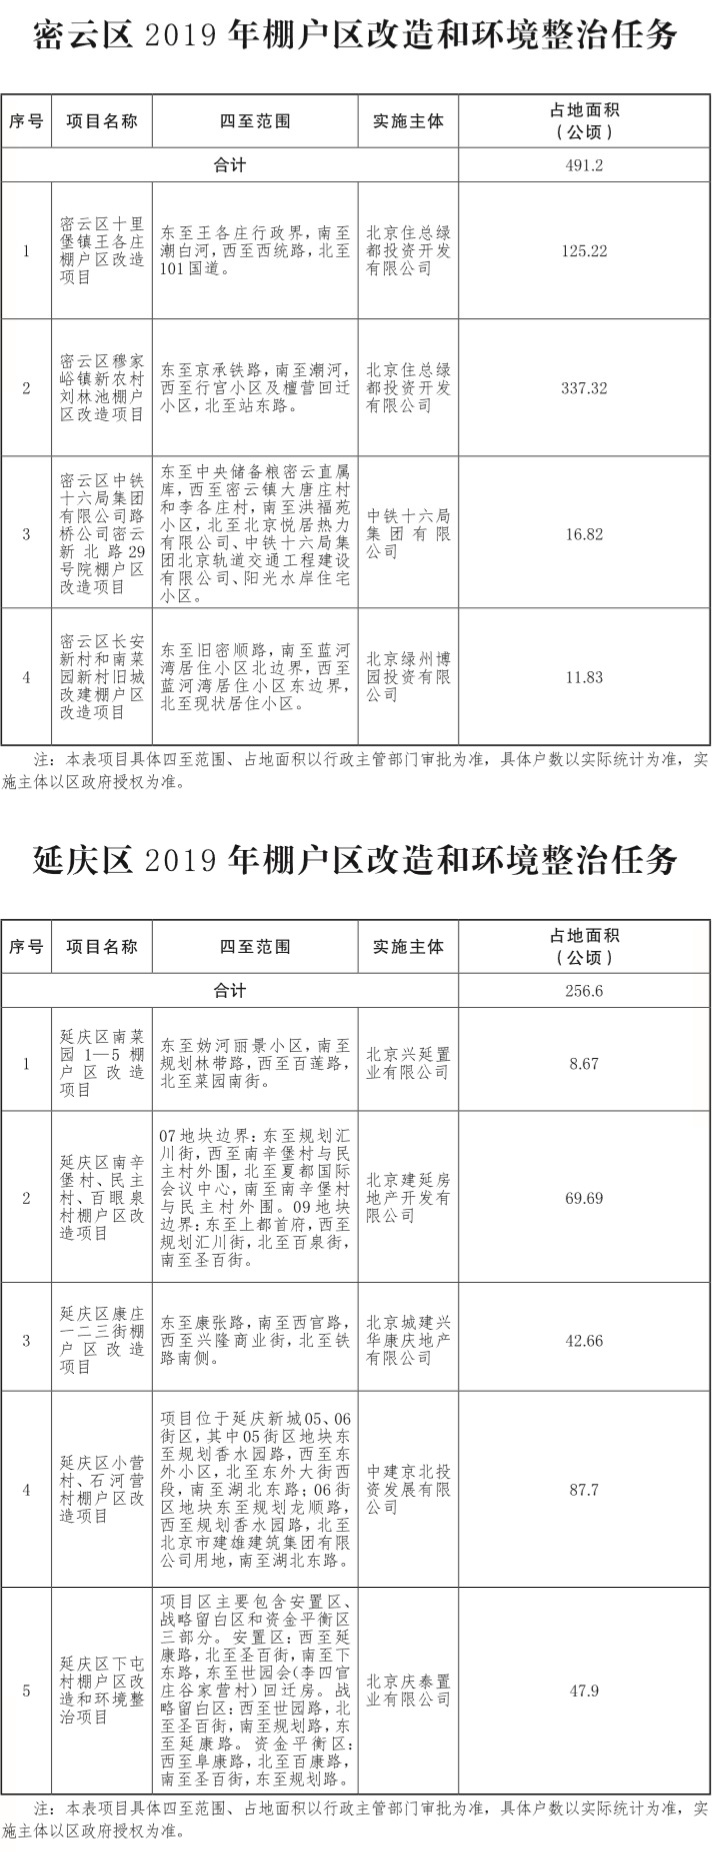 17-北京市2019年棚户区改造和环境整治任务-005.jpg